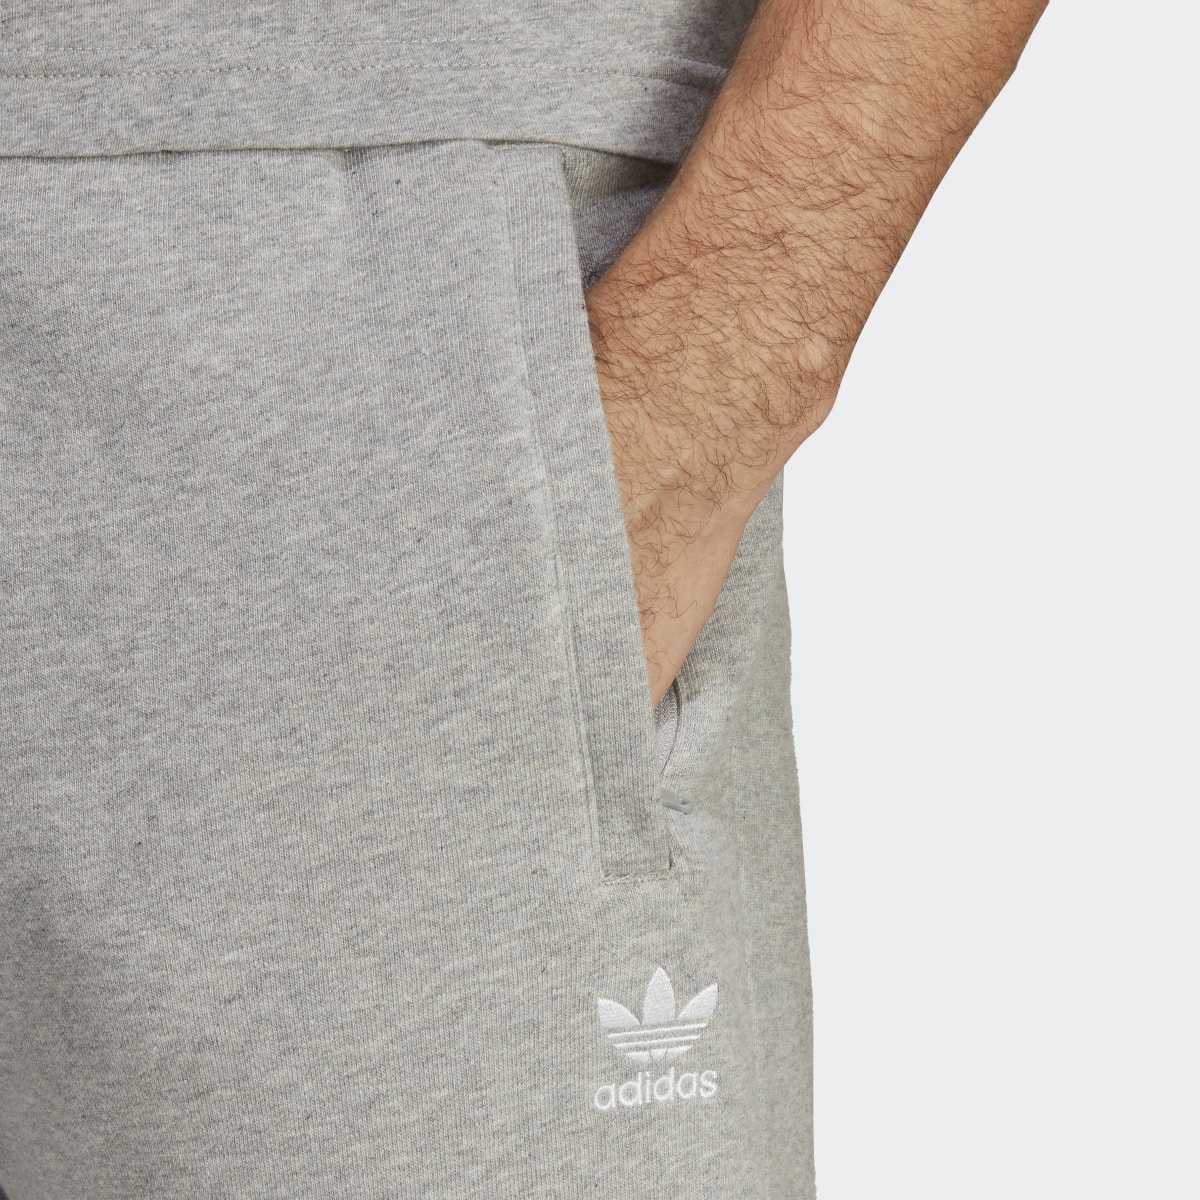 Adidas Trefoil Essentials Cargo Pants. 5